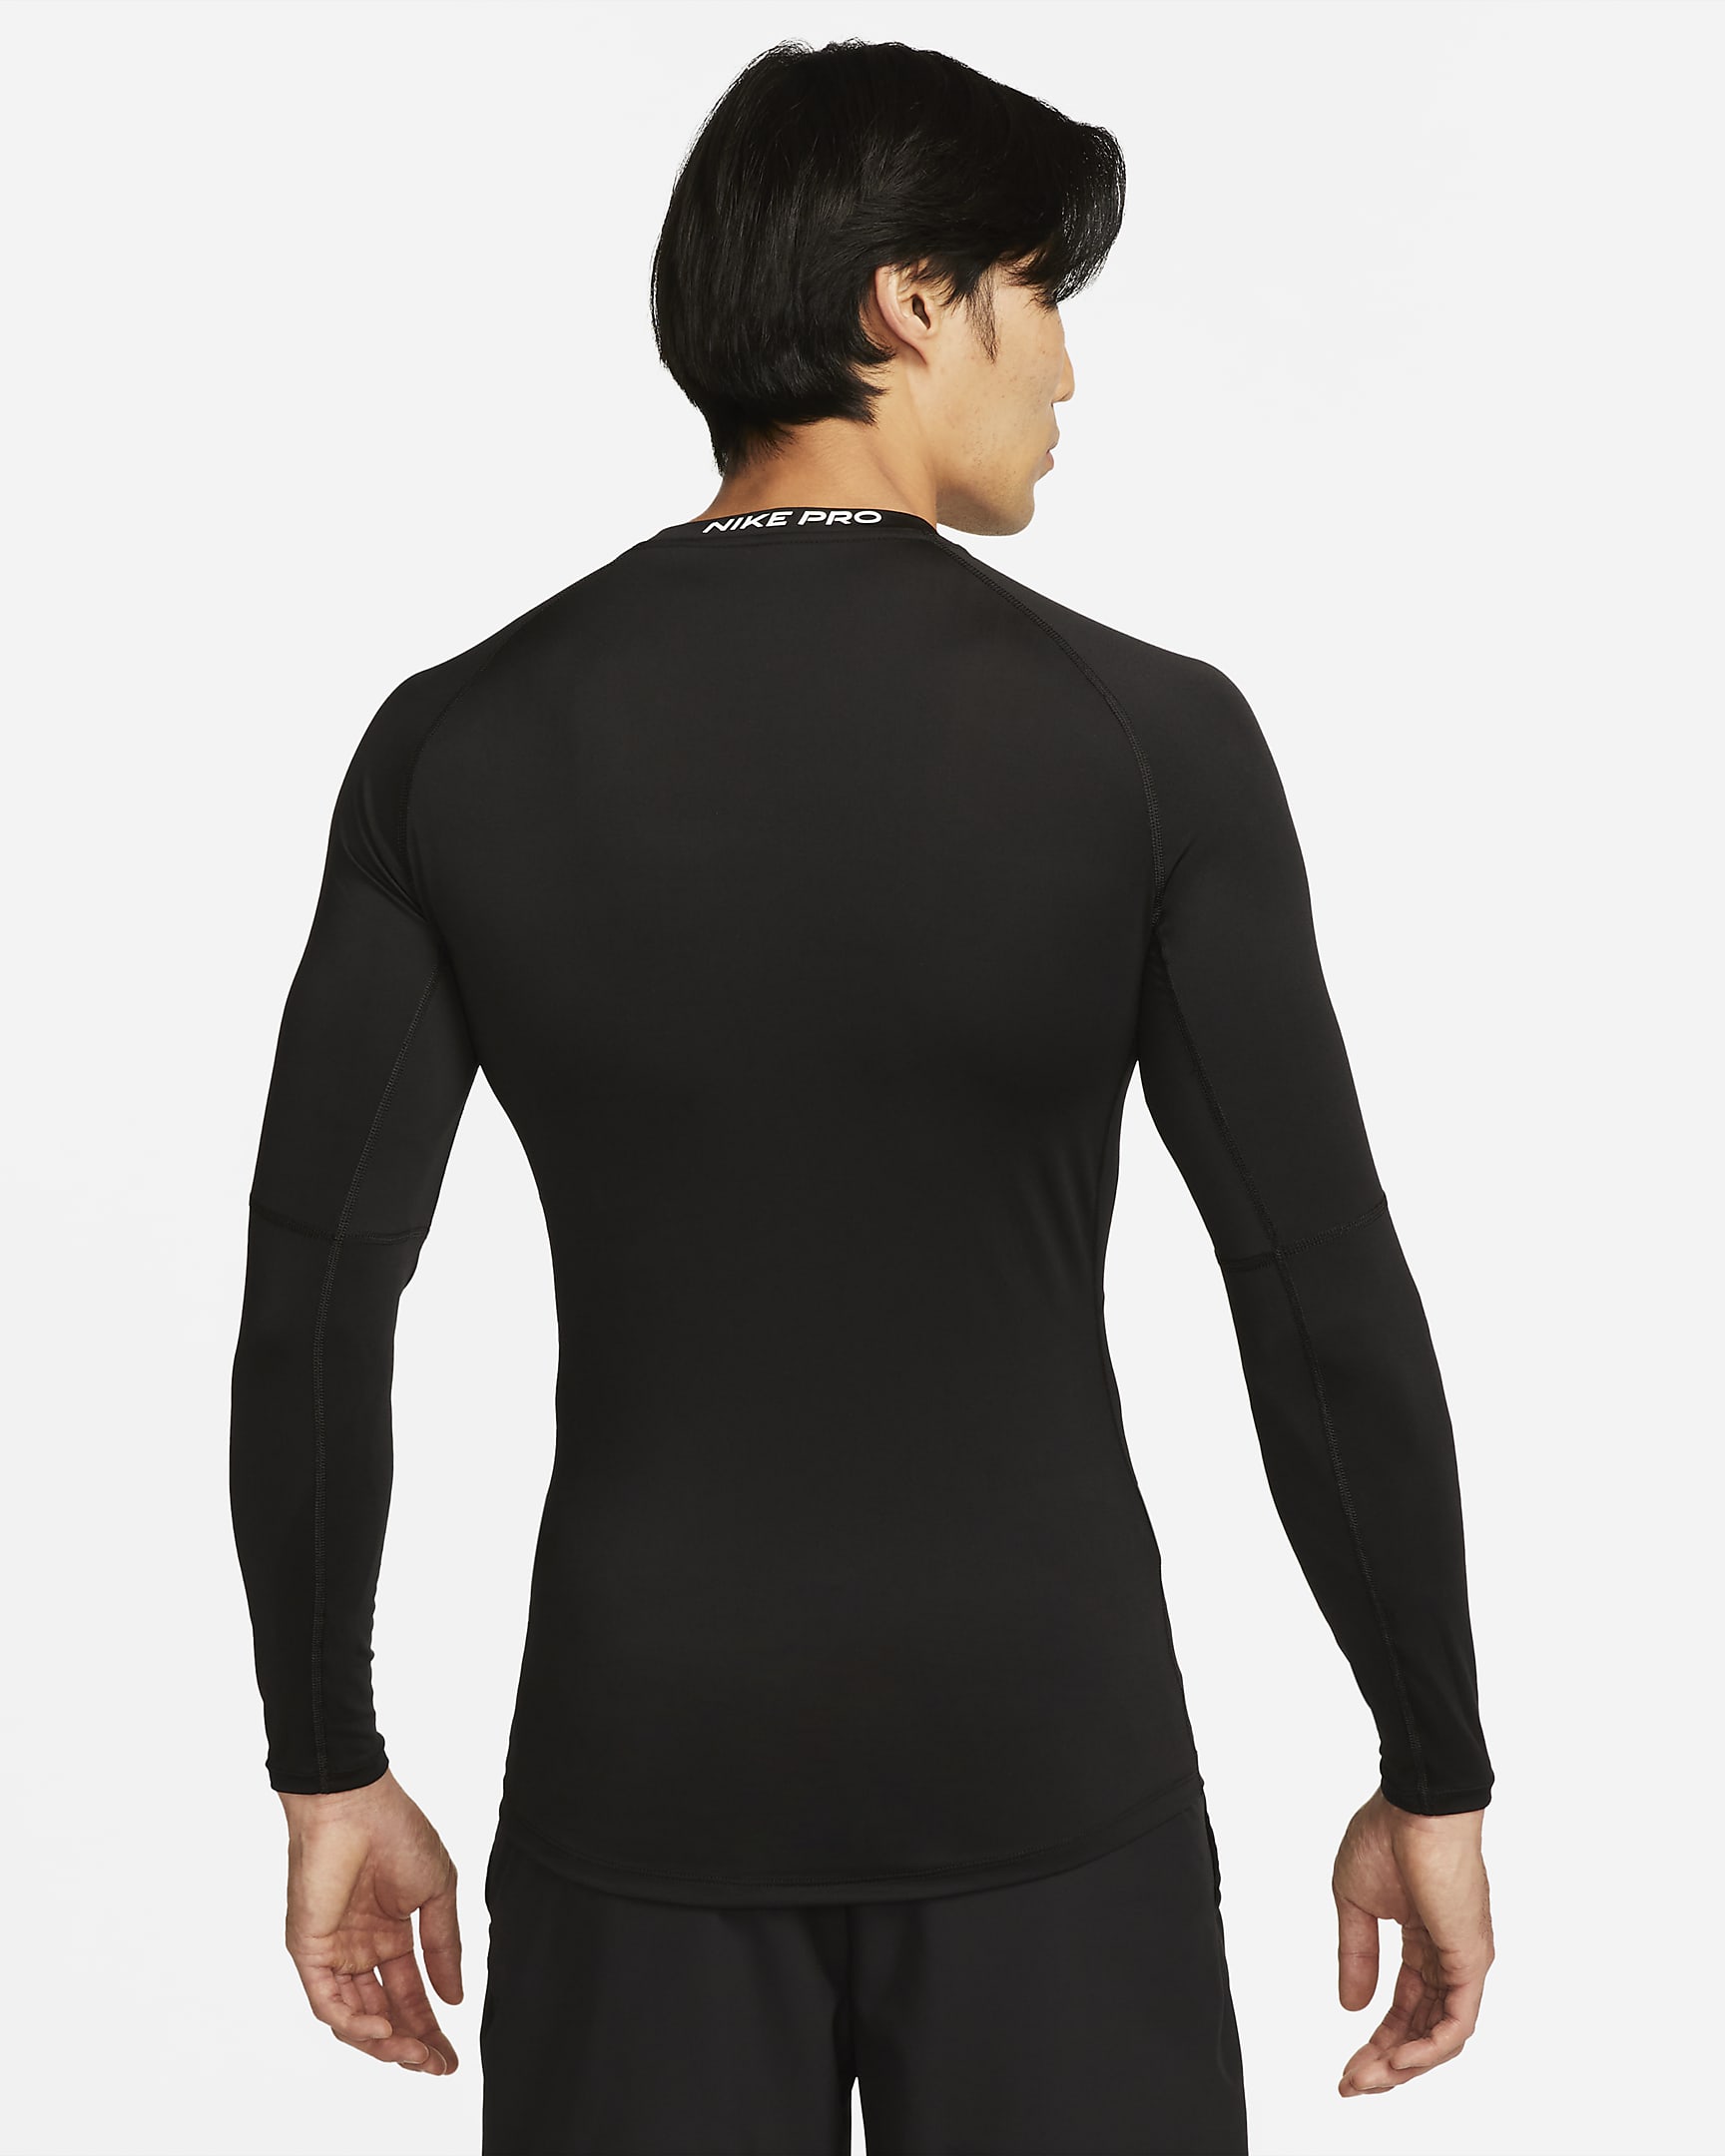 Nike Pro Men's Dri-FIT Tight Long-Sleeve Fitness Top - Black/White